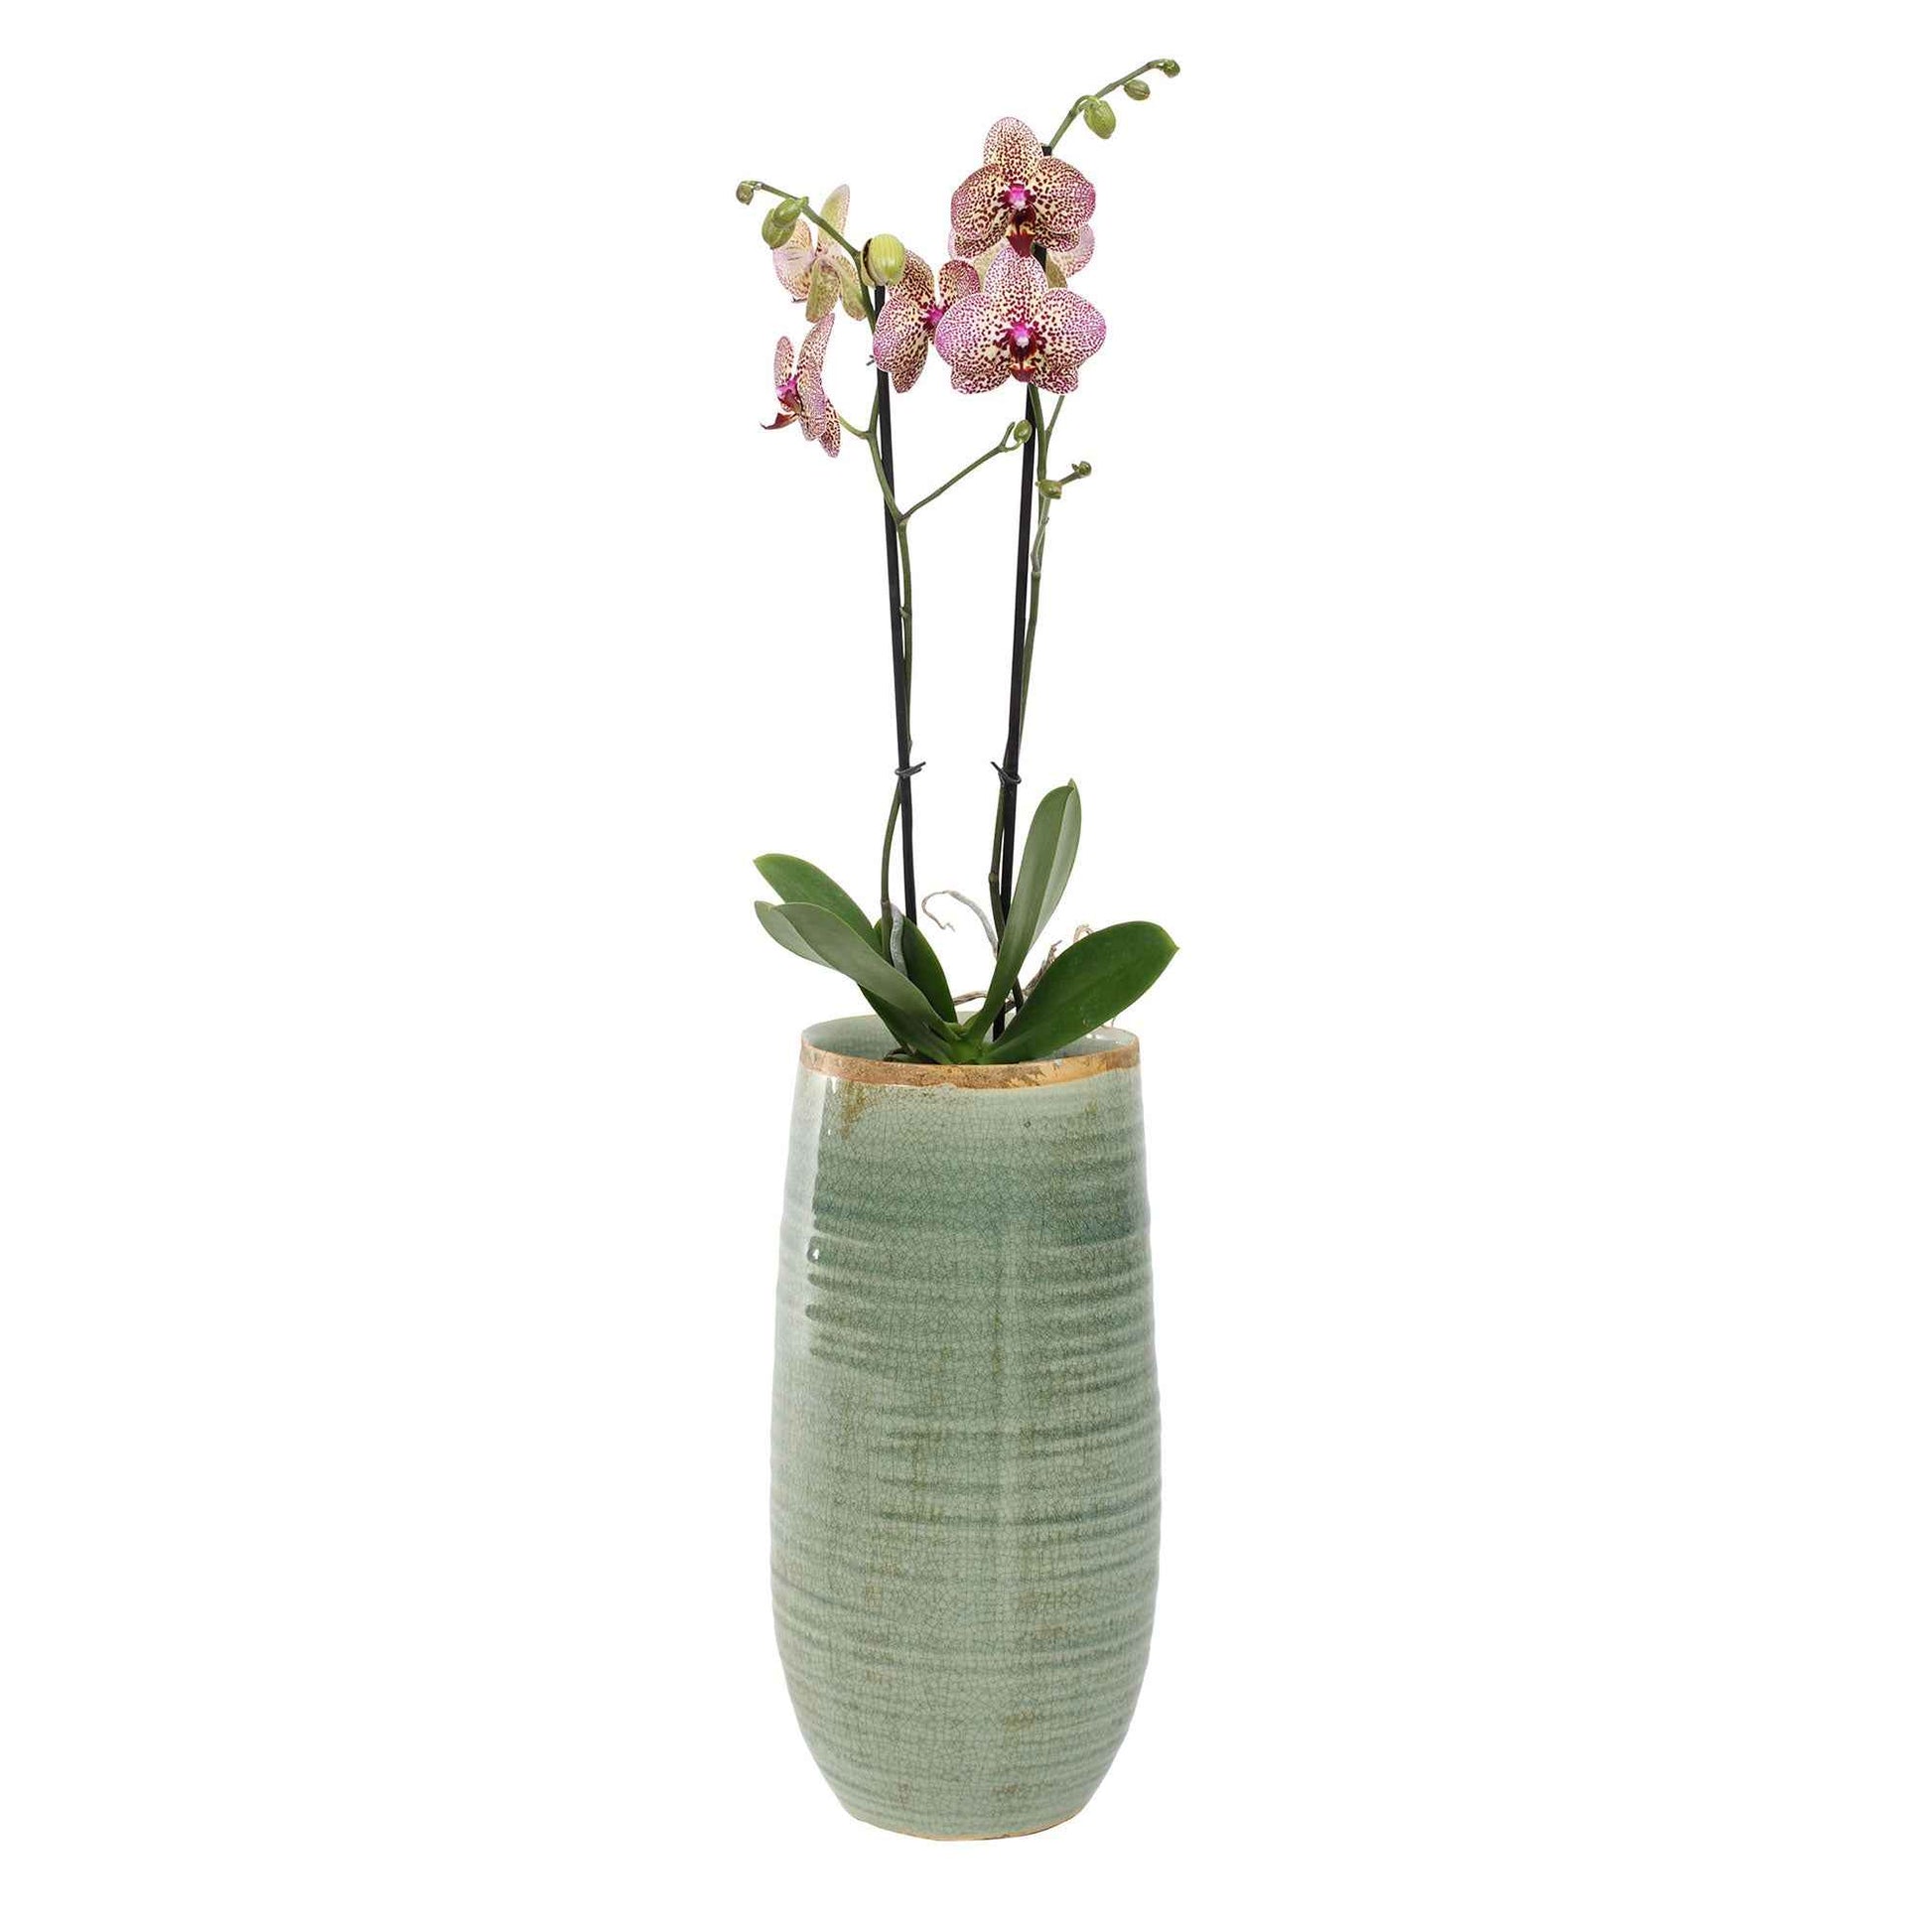 TS pot de fleurs haut Iris rond vert - Pot pour l'intérieur - Petits pots d'intérieur